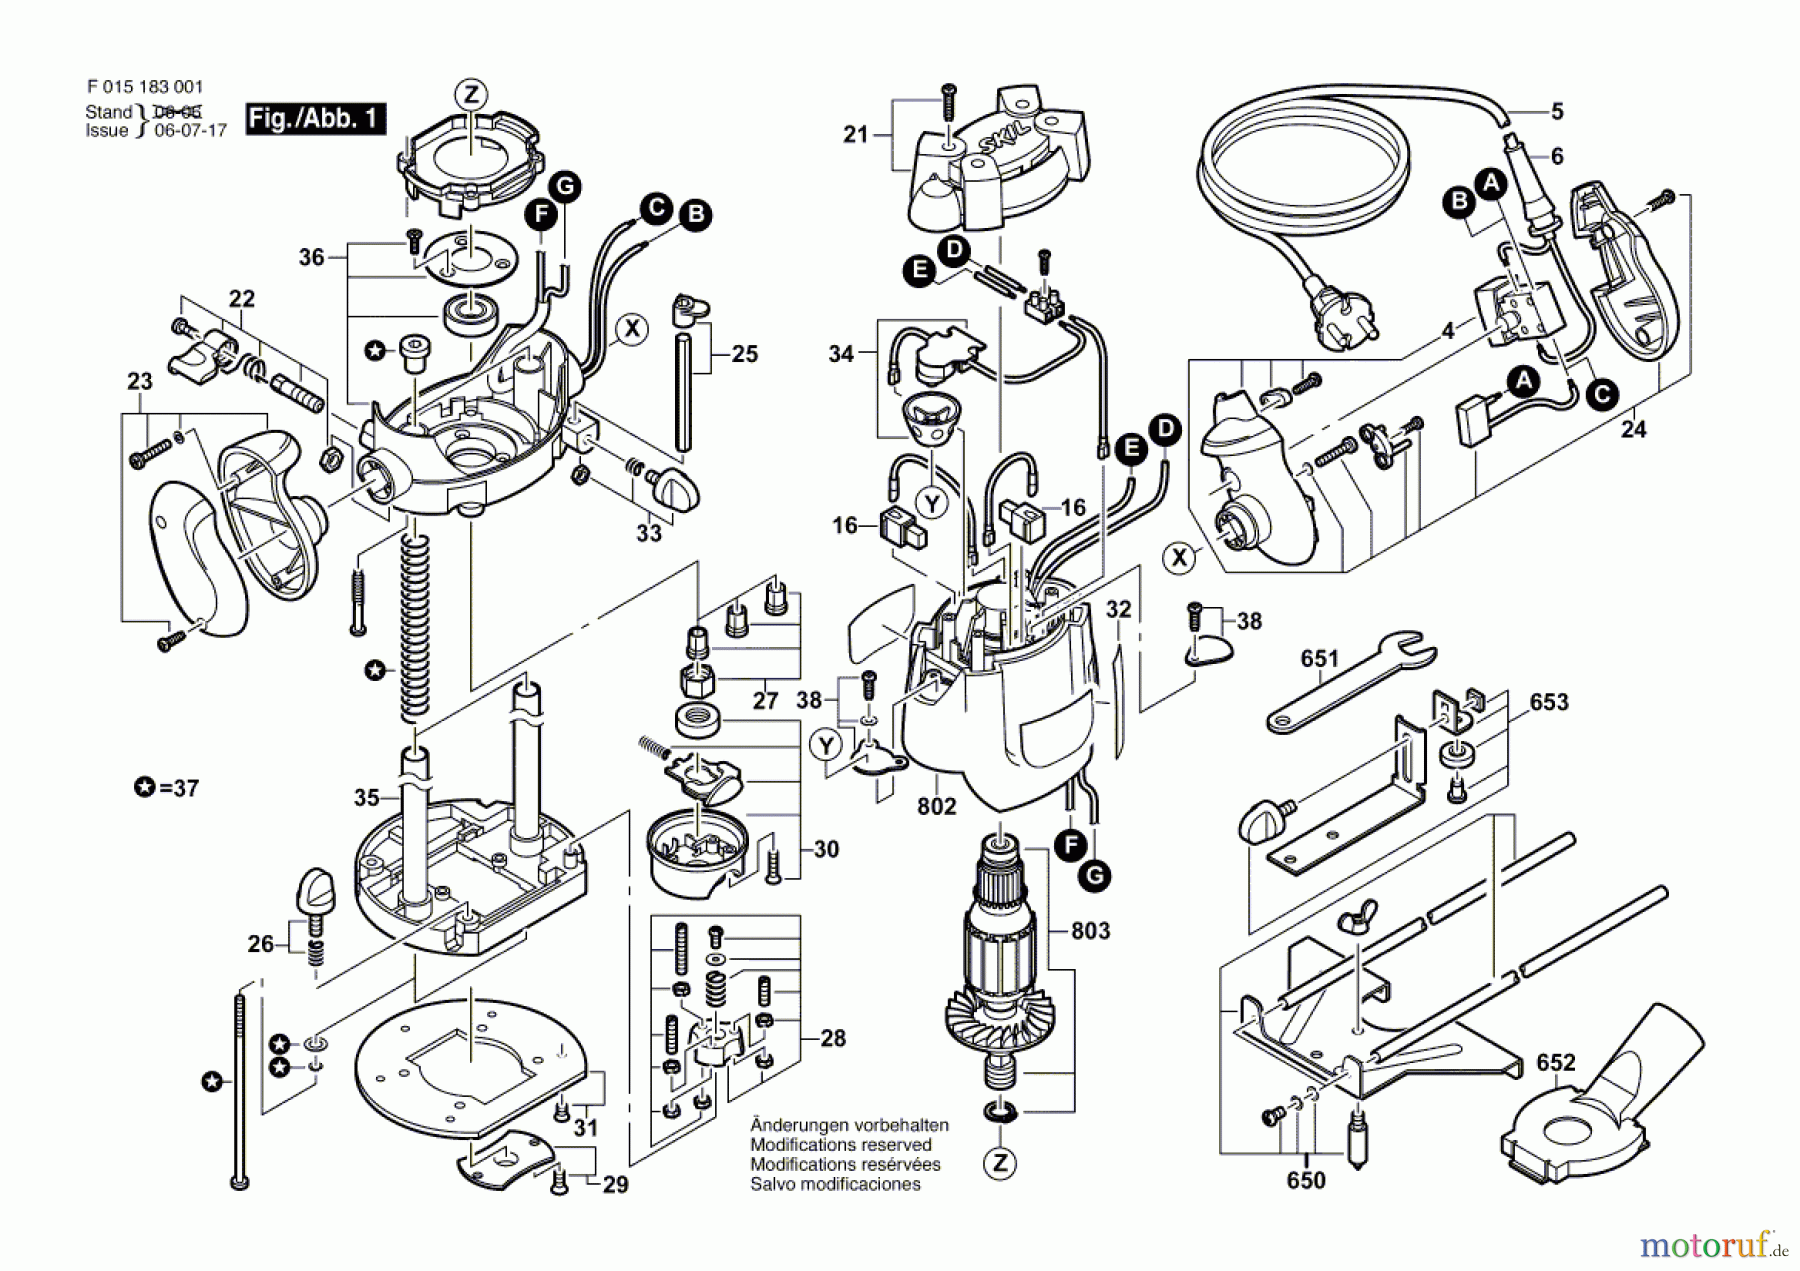  Bosch Werkzeug Oberfräse 1830 Seite 1